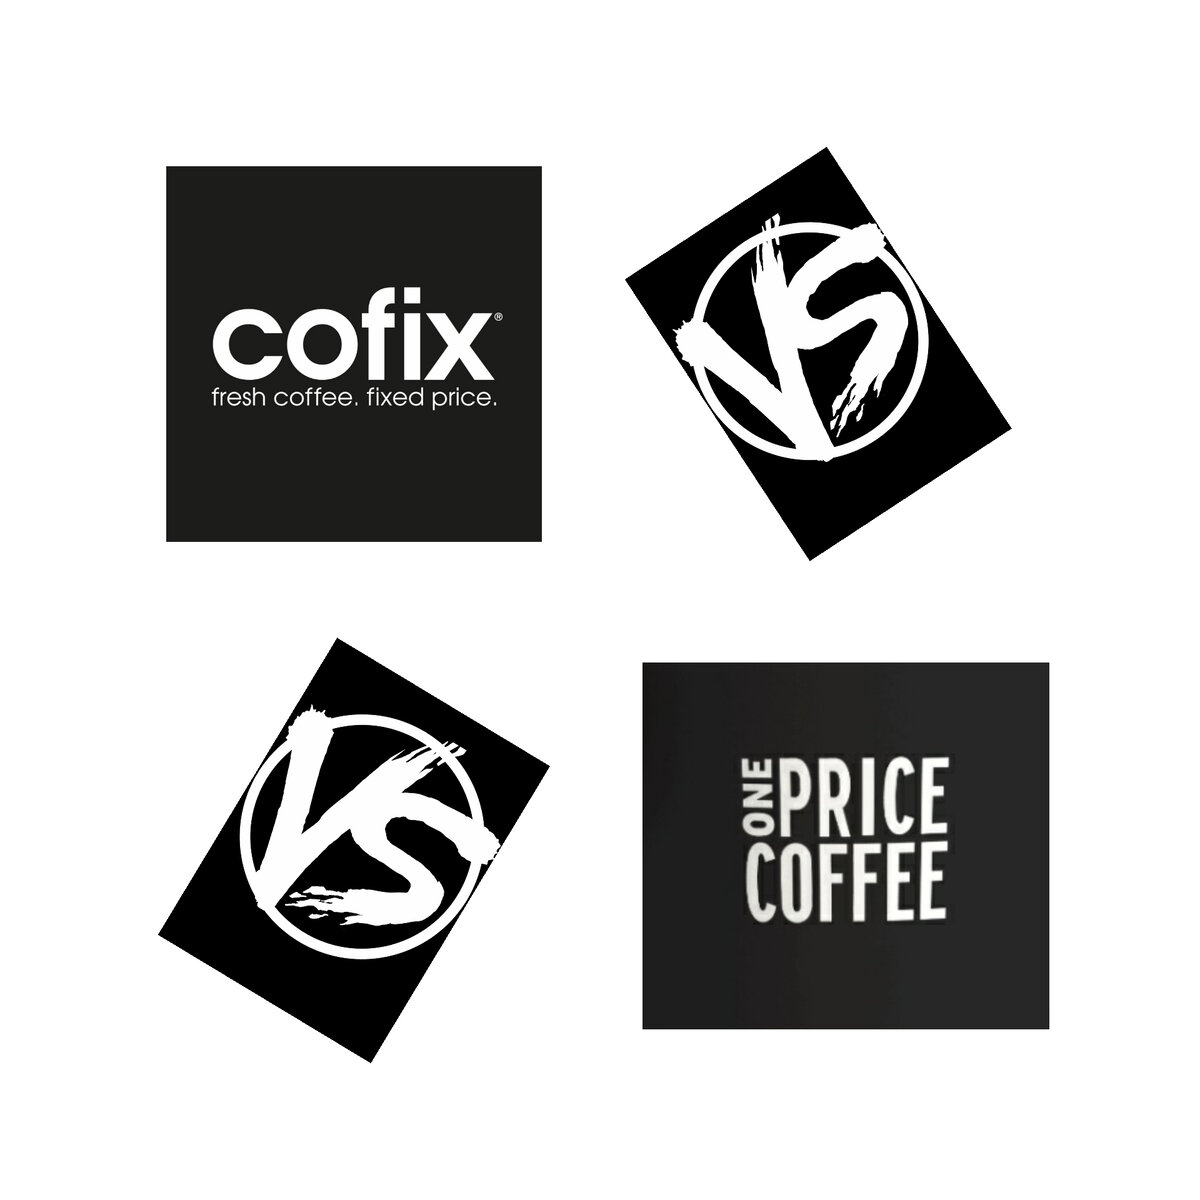 Правда кофе логотип. Программа лояльности кофикс. Карта лояльности иконка. Cofix или one Price. One Price Coffee и Cofix одно и тоже или нет.